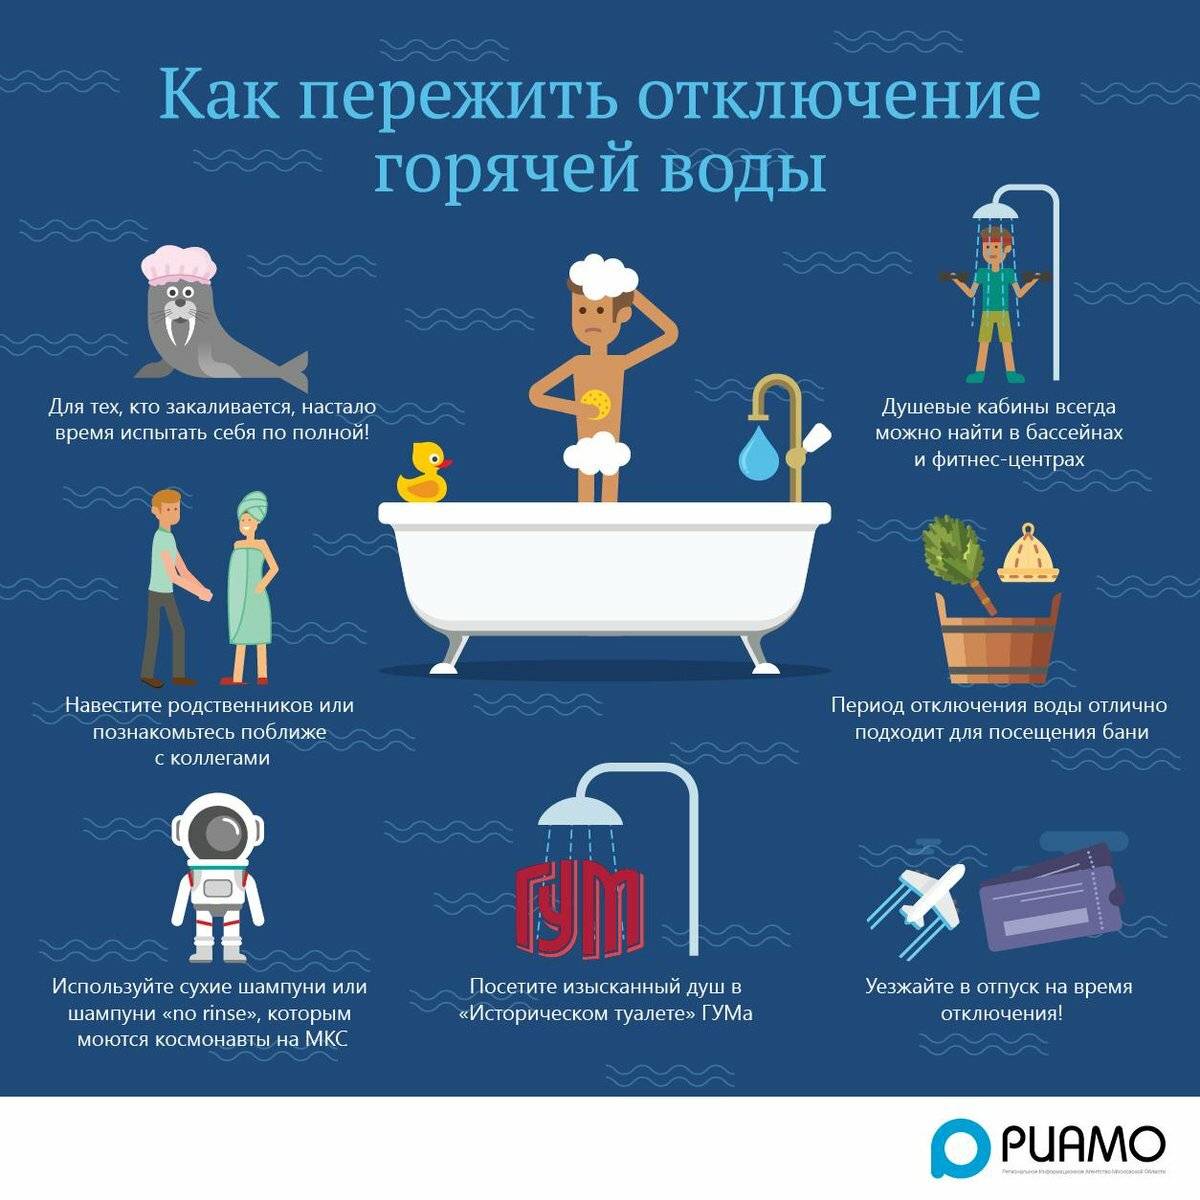 Почему отключают горячую воду летом в россии